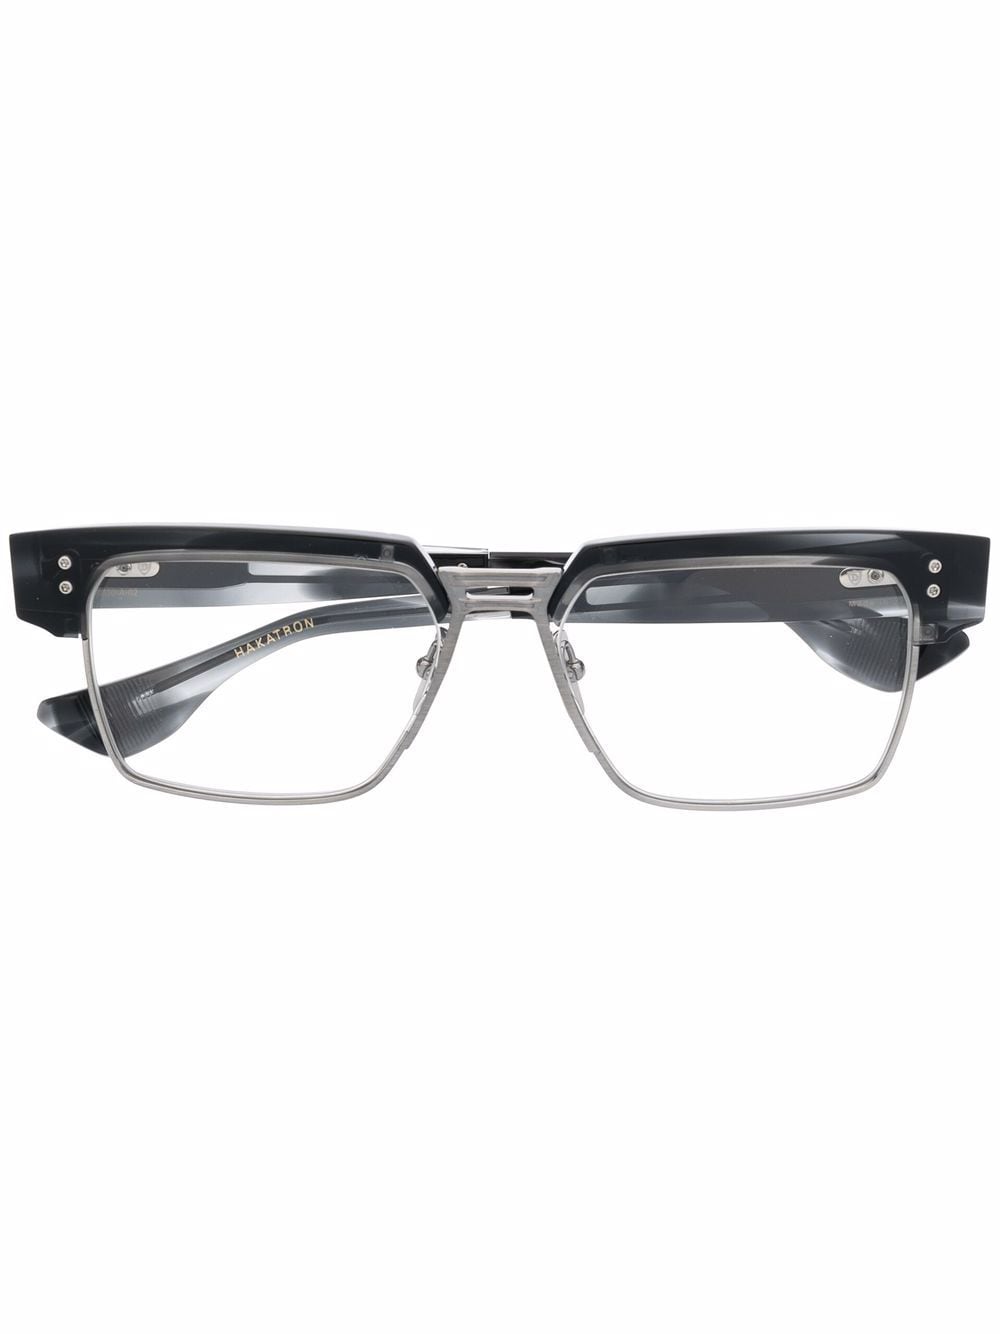 Hakatron square-frame glasses